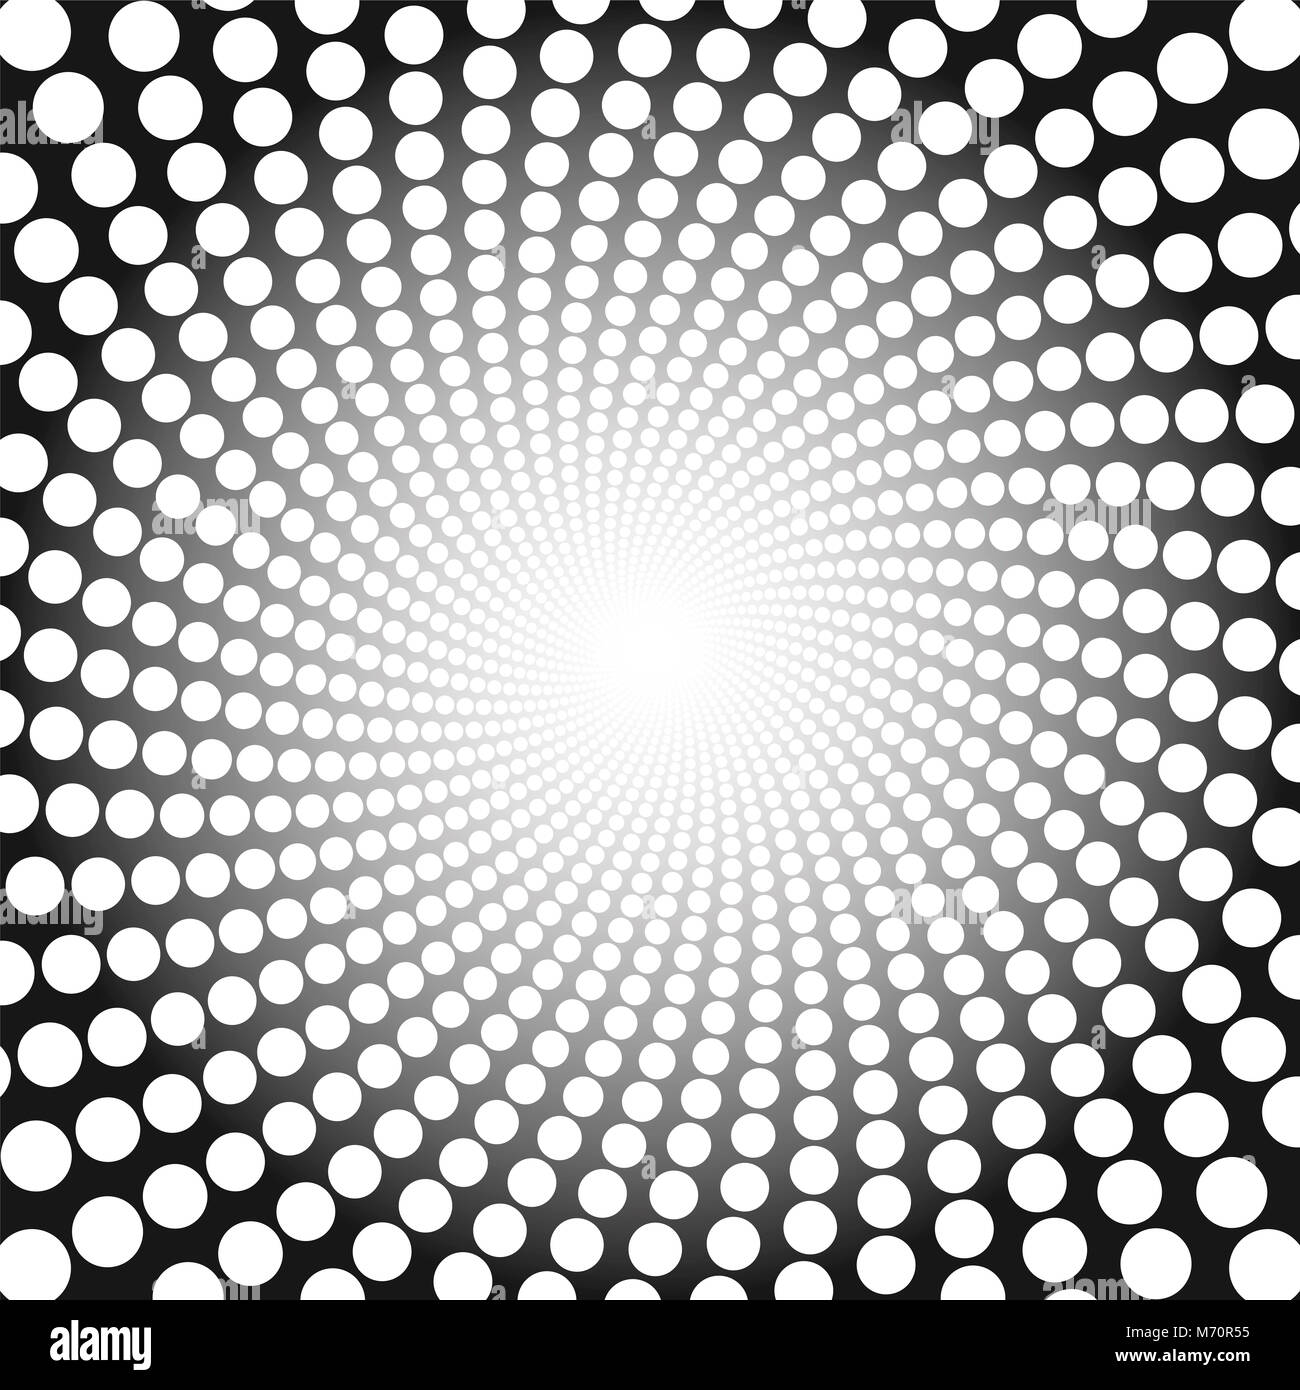 Configuration en spirale. Tunnel en pointillé blanc avec Light Centre - illustration fond circulaire torsadée, hypnotique et psychédélique. Banque D'Images